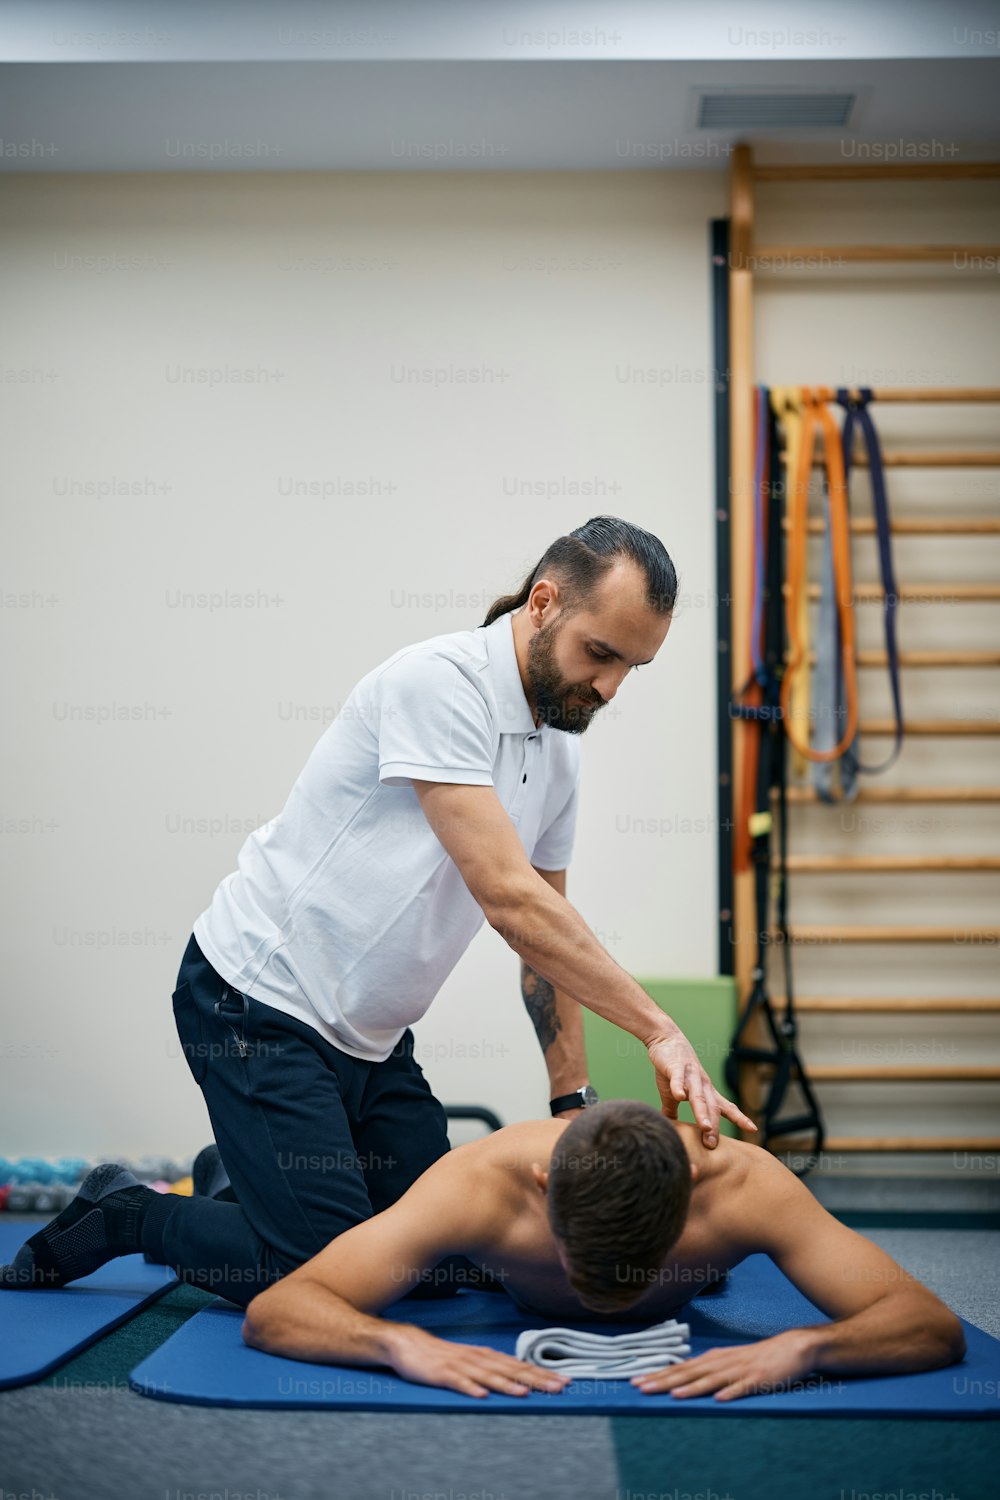 Kinésithérapeute massant le dos d’un sportif pendant la thérapie au centre de rééducation.